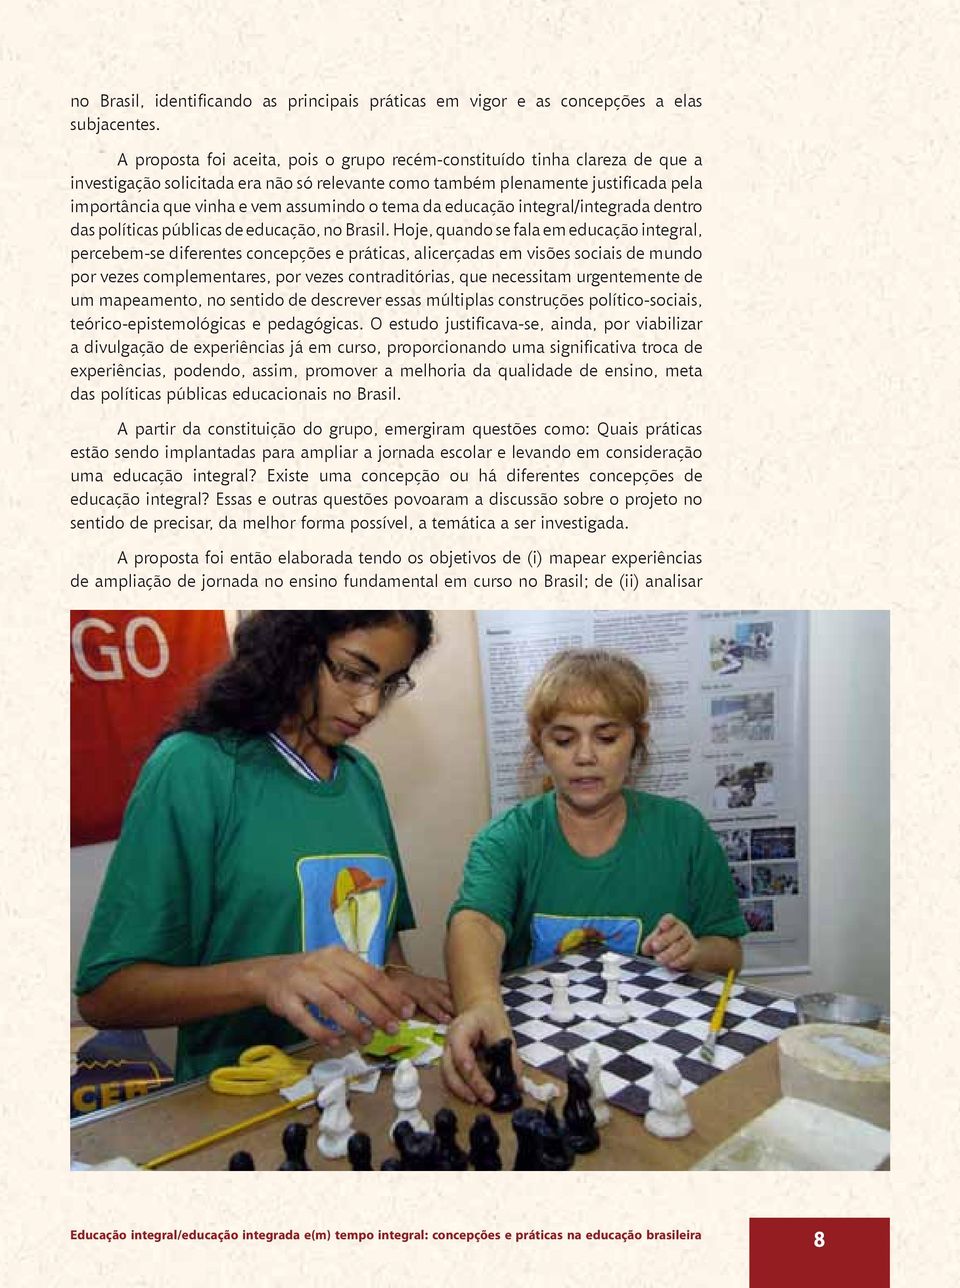 o tema da educação integral/integrada dentro das políticas públicas de educação, no Brasil.